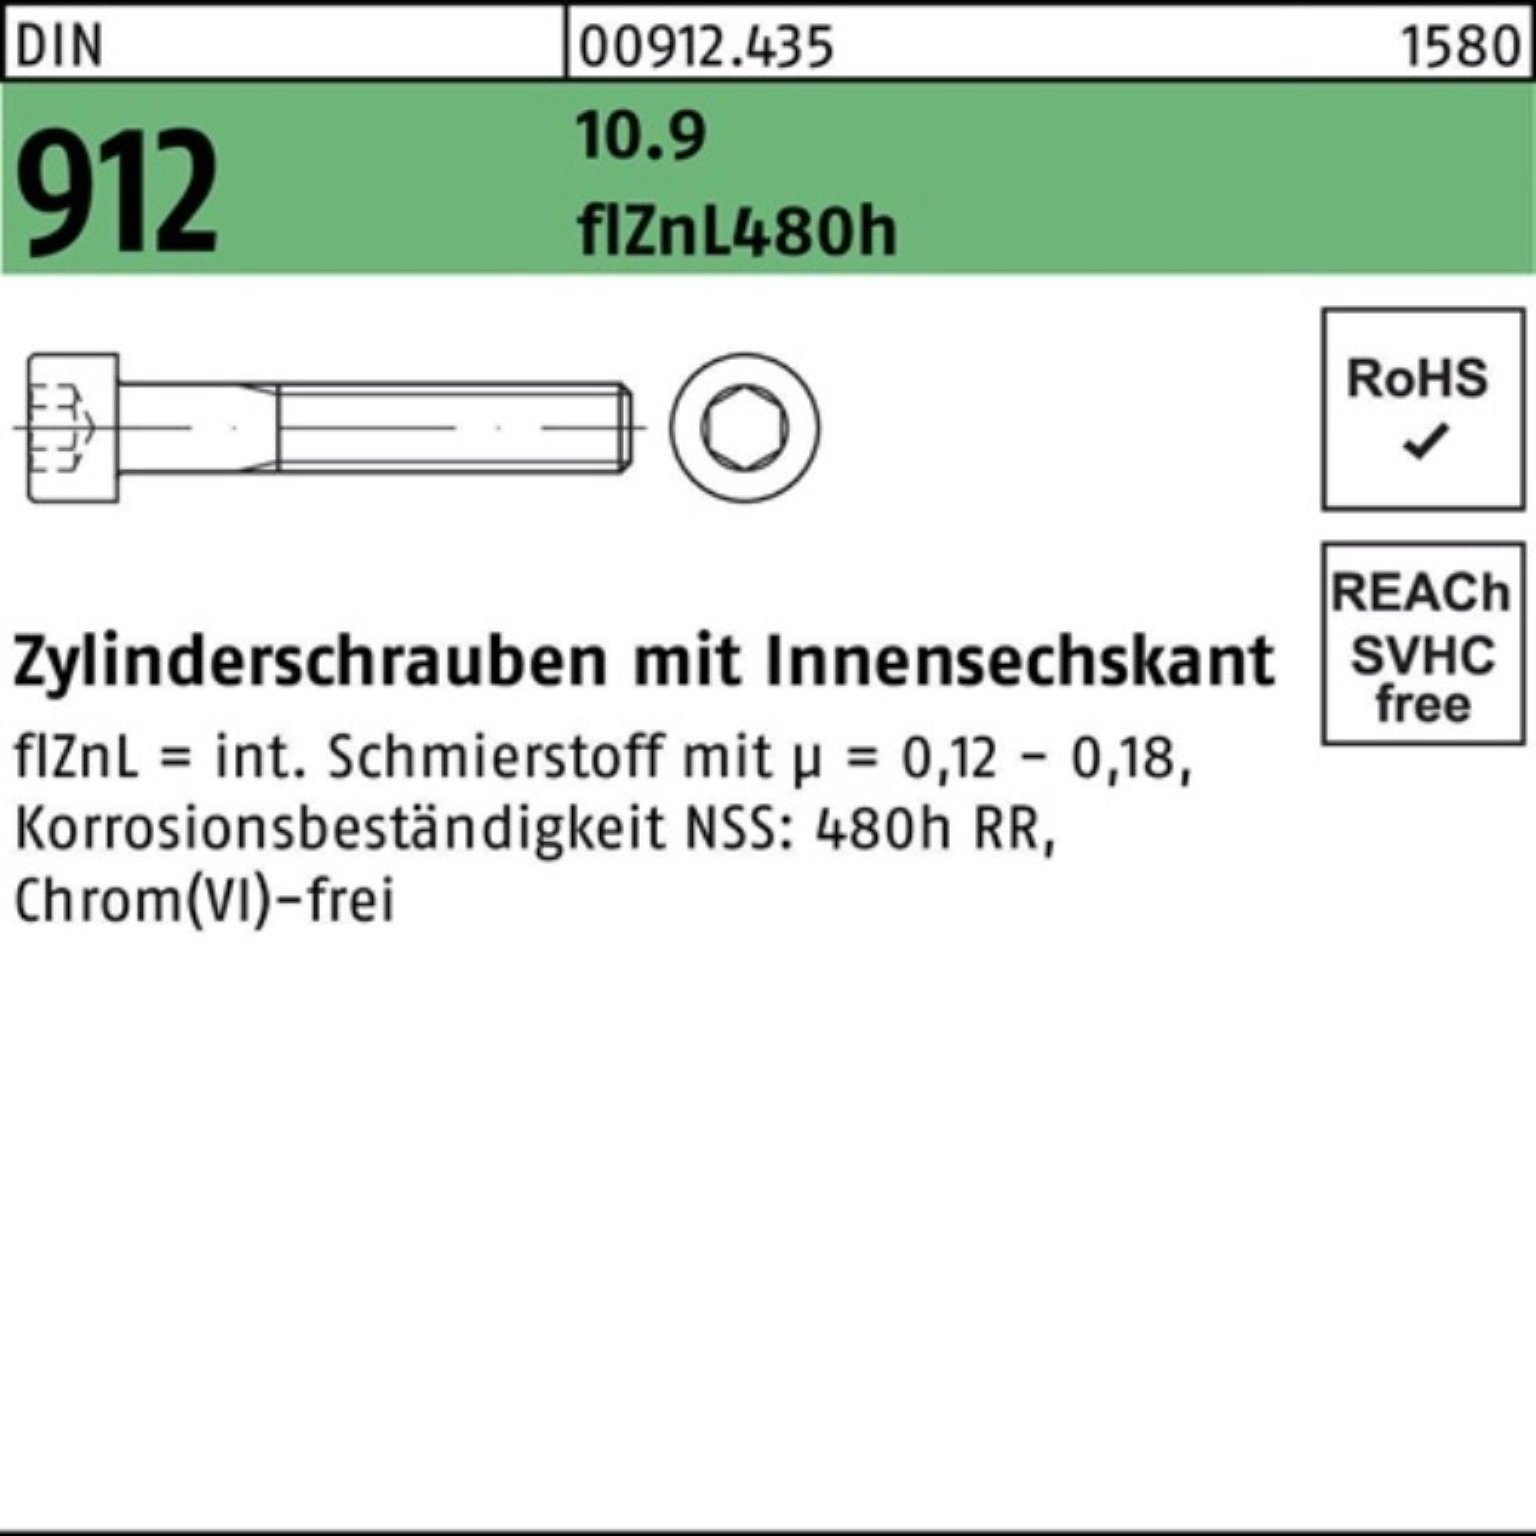 Reyher Zylinderschraube 200er Zylinderschraube M6x35 Pack DIN 10.9 912 Innen-6kt flZnL/nc/x/x